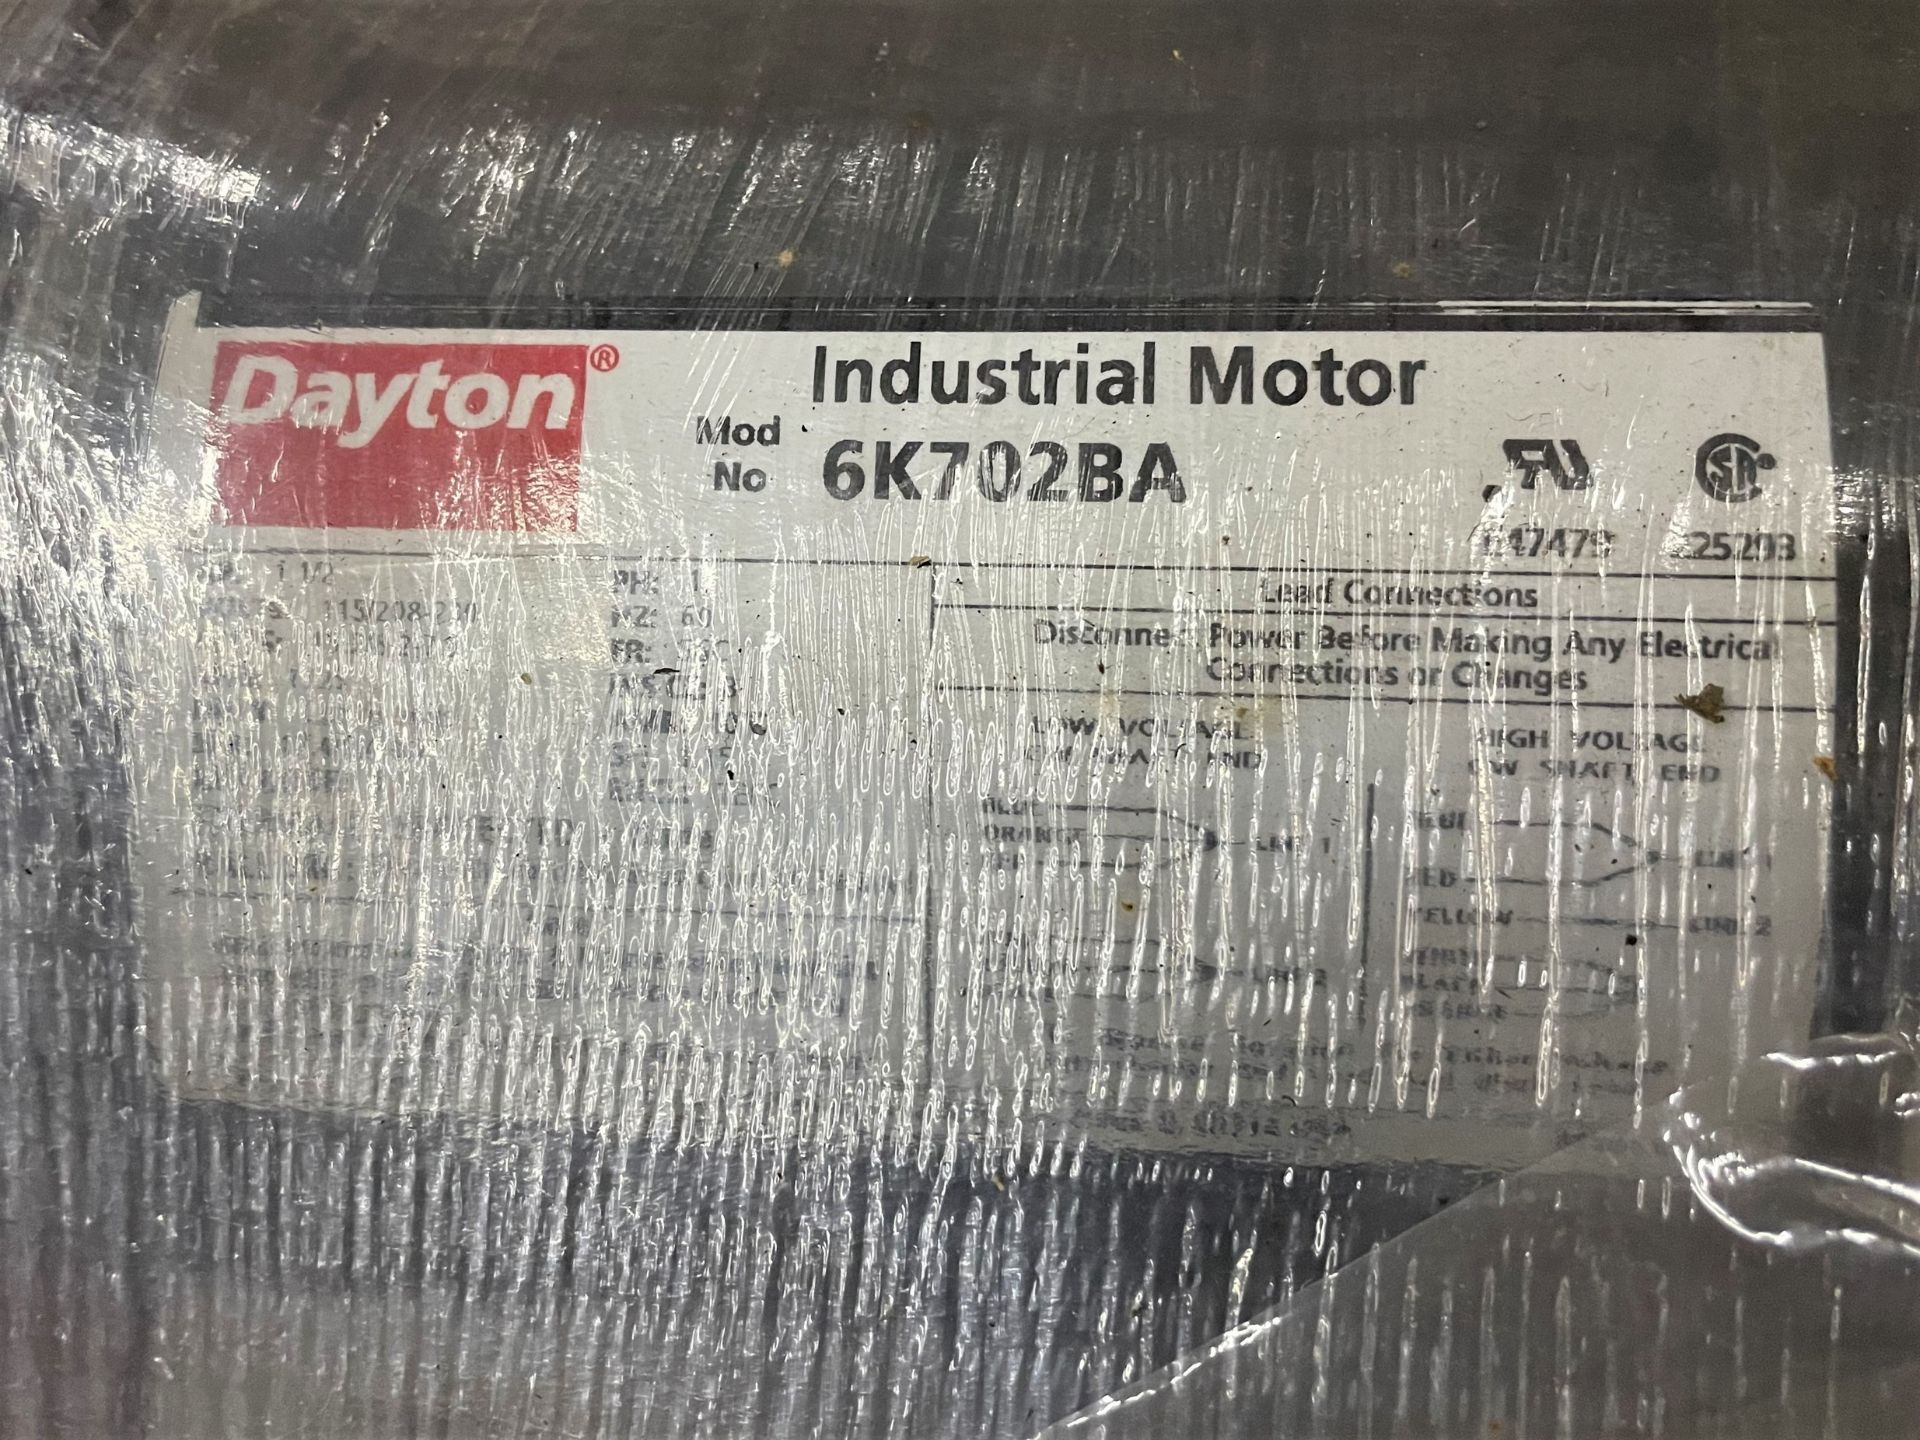 Dayton 6K702BA Motor, 1-1/2HP - Image 2 of 4